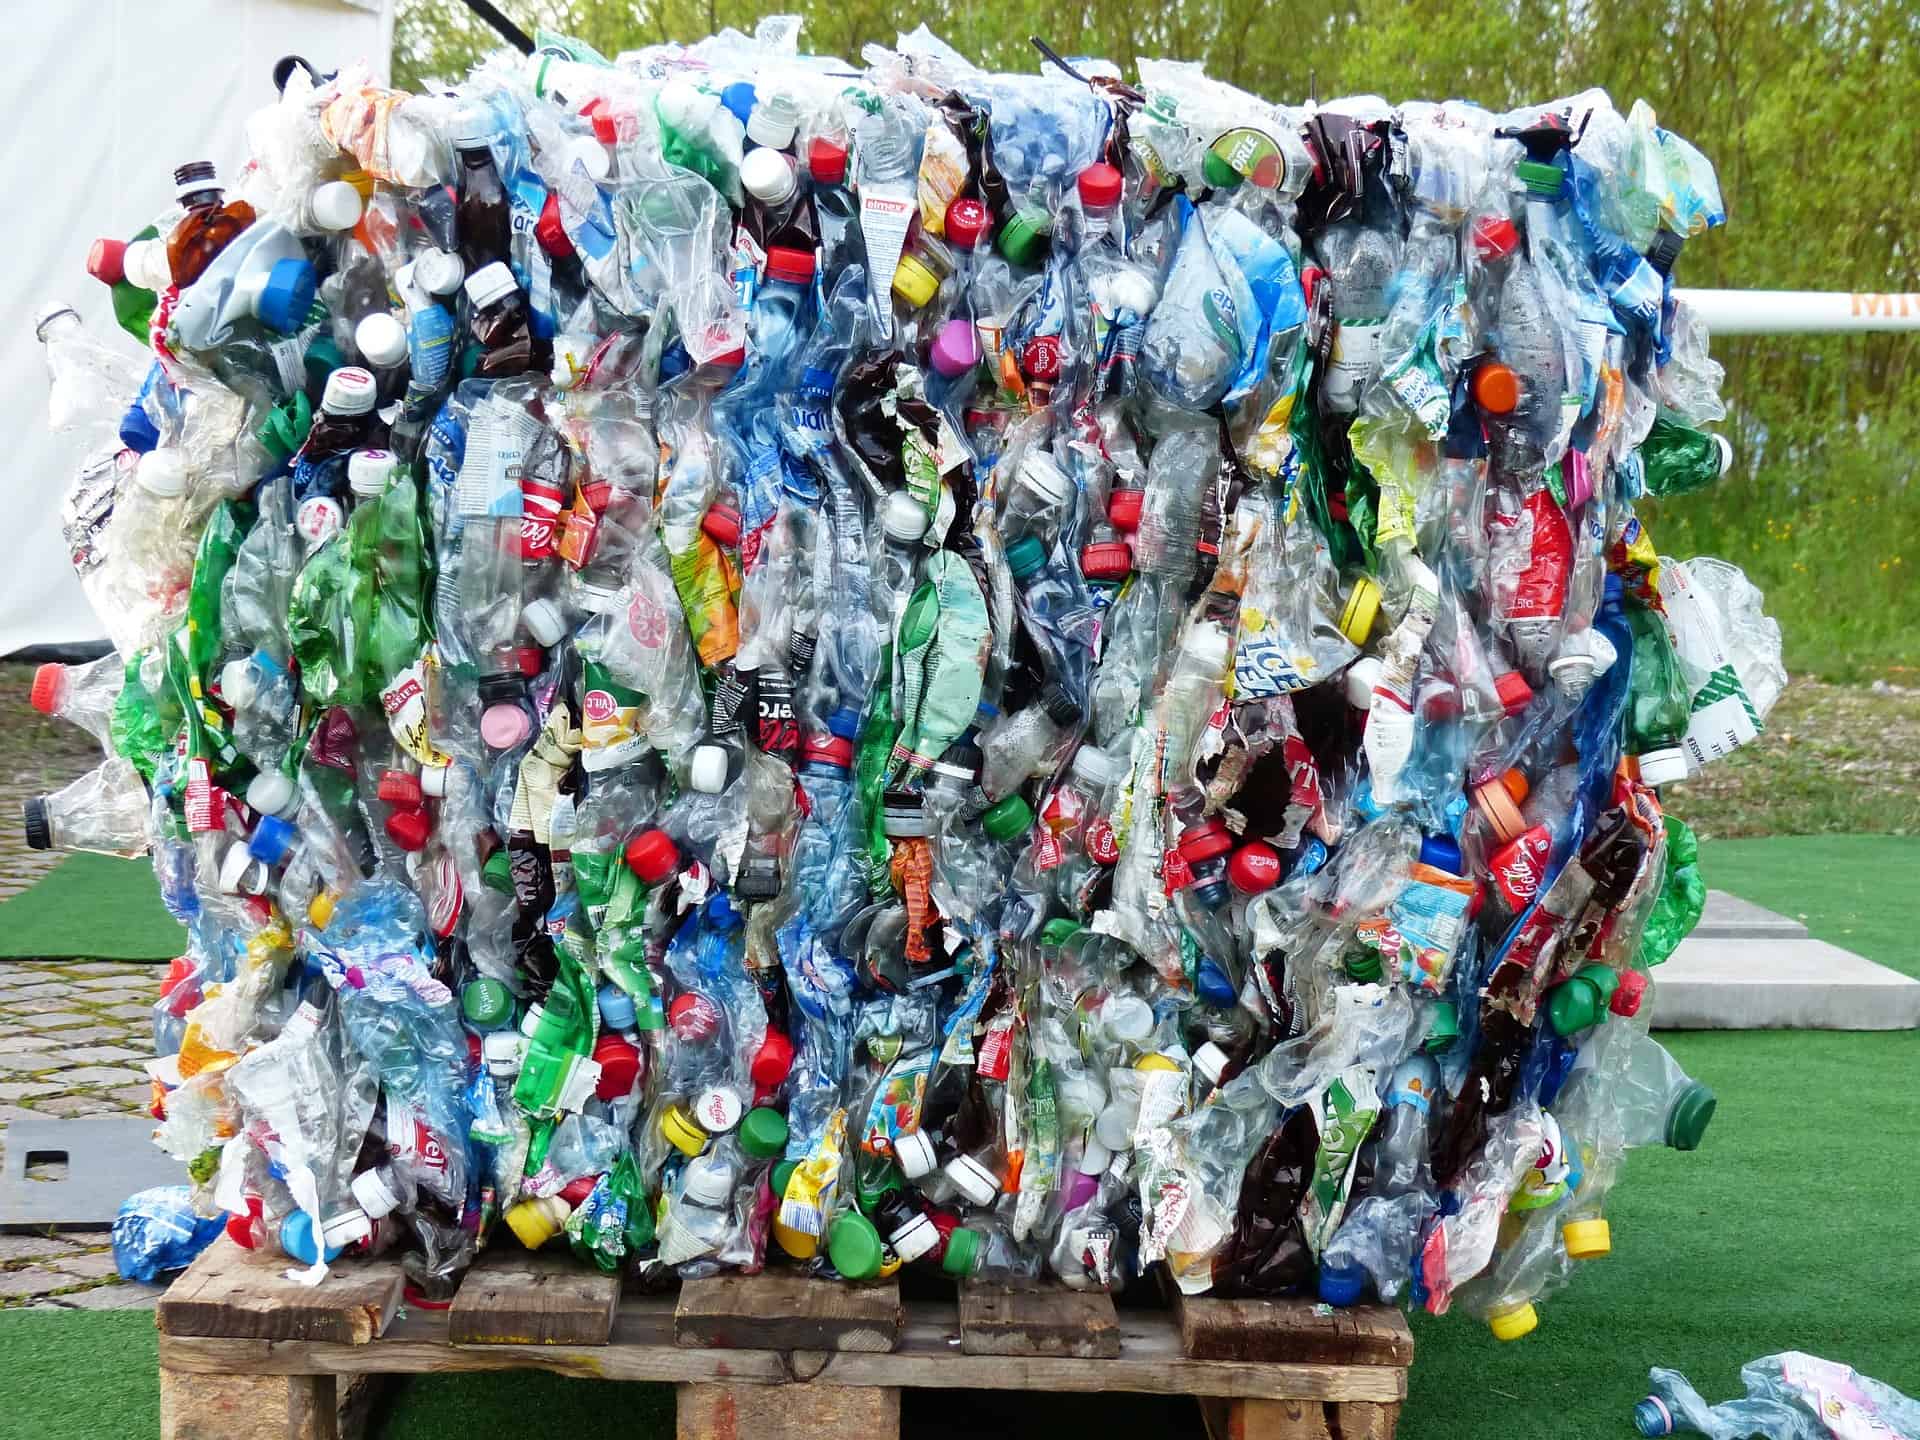 Fraunholcz: ‘Met alleen mechanische recycling gaan we EU-richtlijnen niet halen’